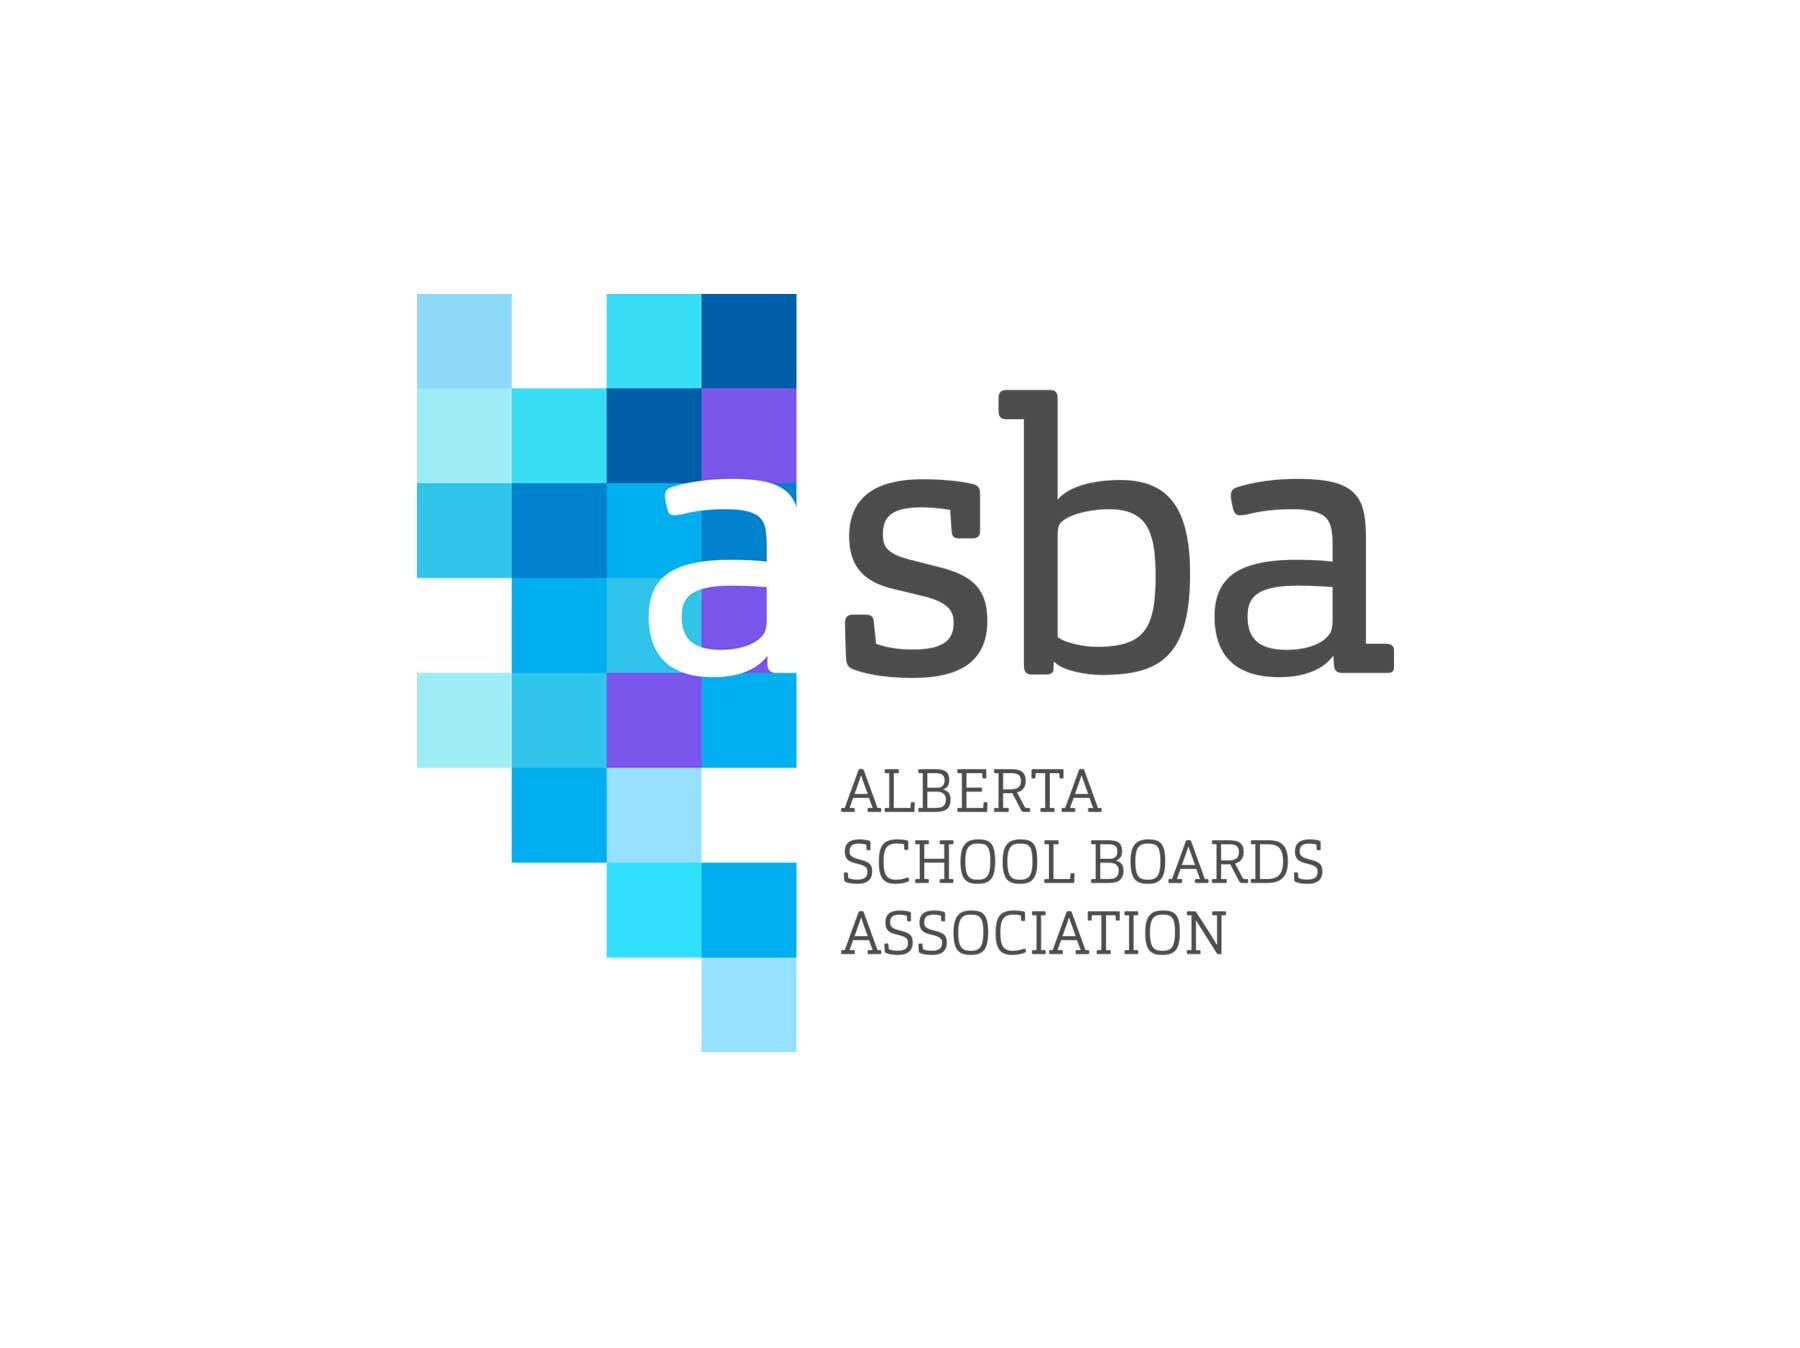 Alberta School Boards Association logo